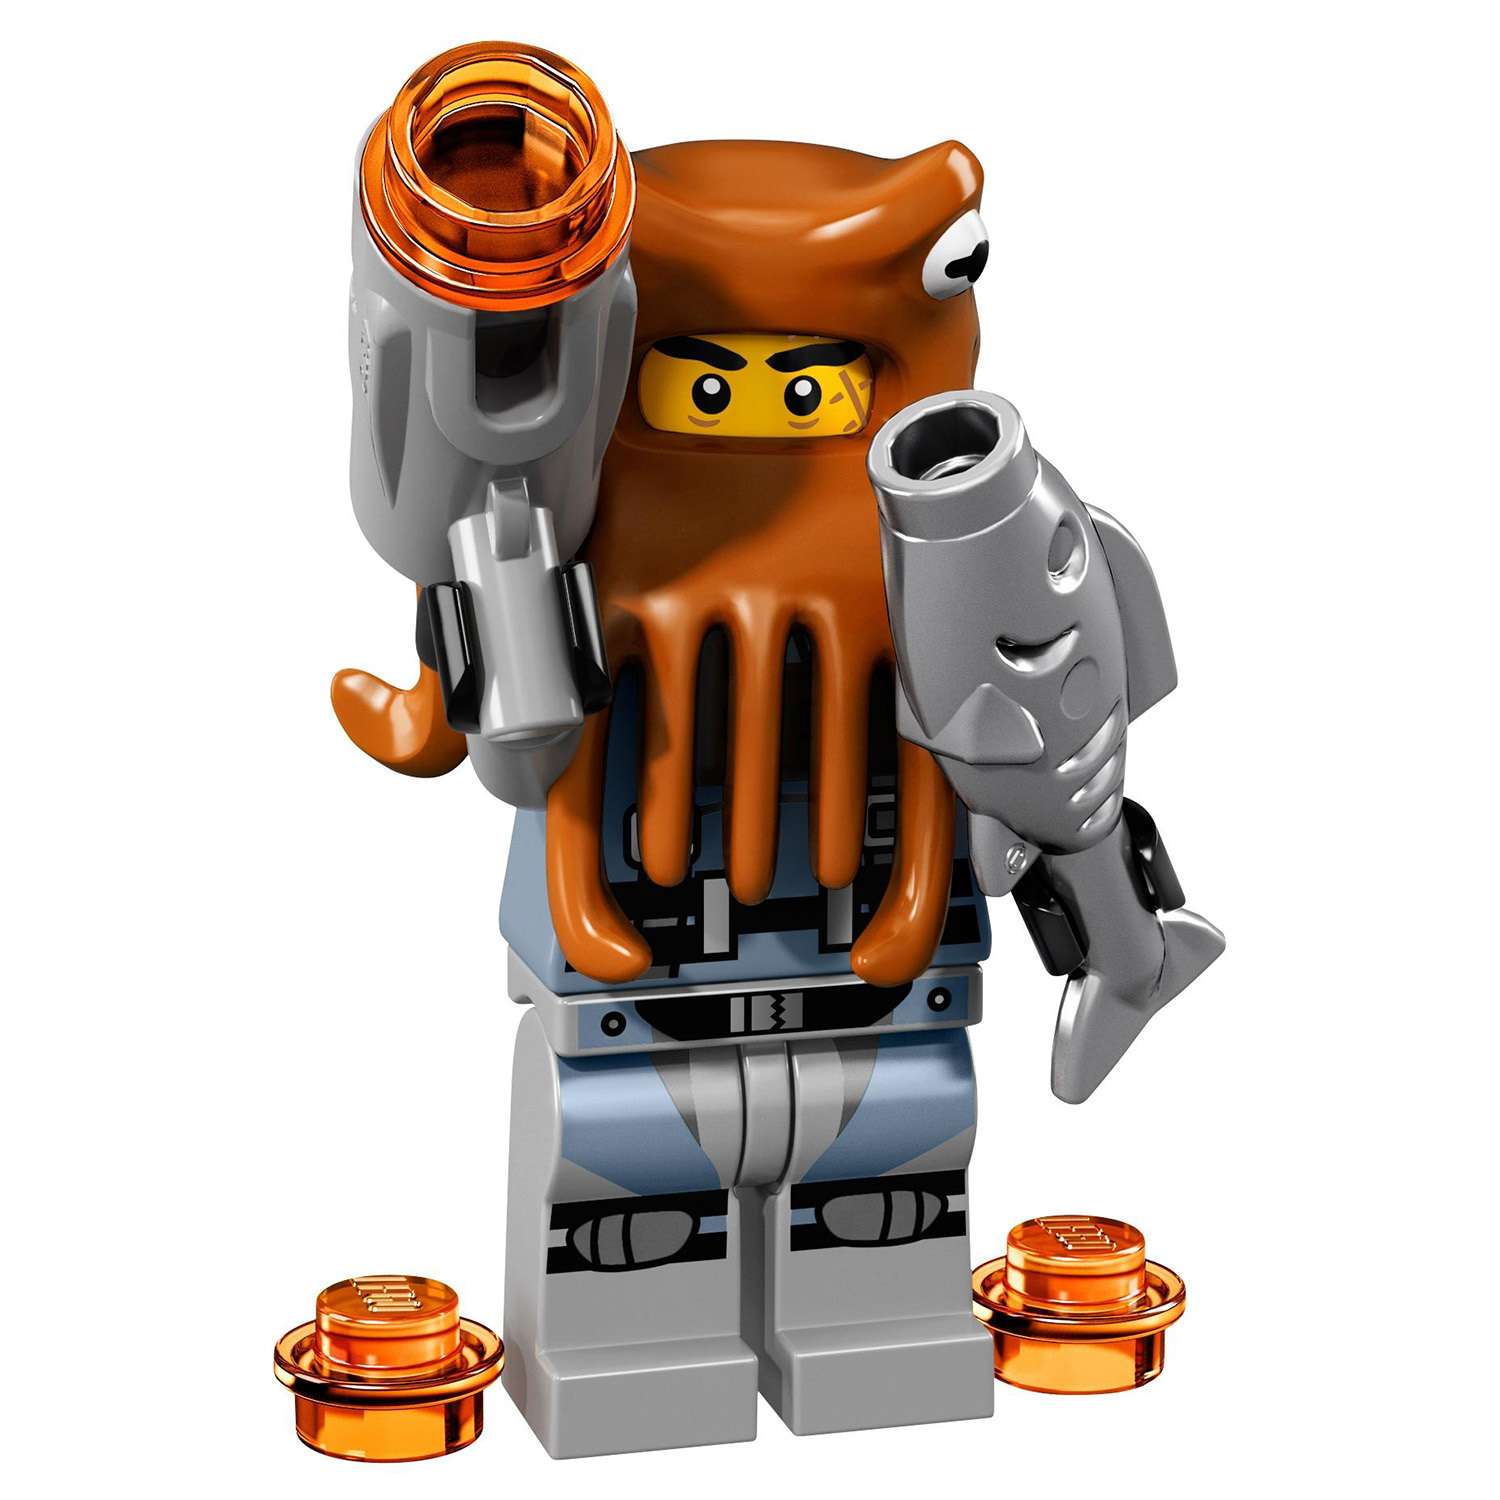 Конструктор LEGO Minifigures Минифигурки ФИЛЬМ: НИНДЗЯГО (71019) в ассортименте - фото 25